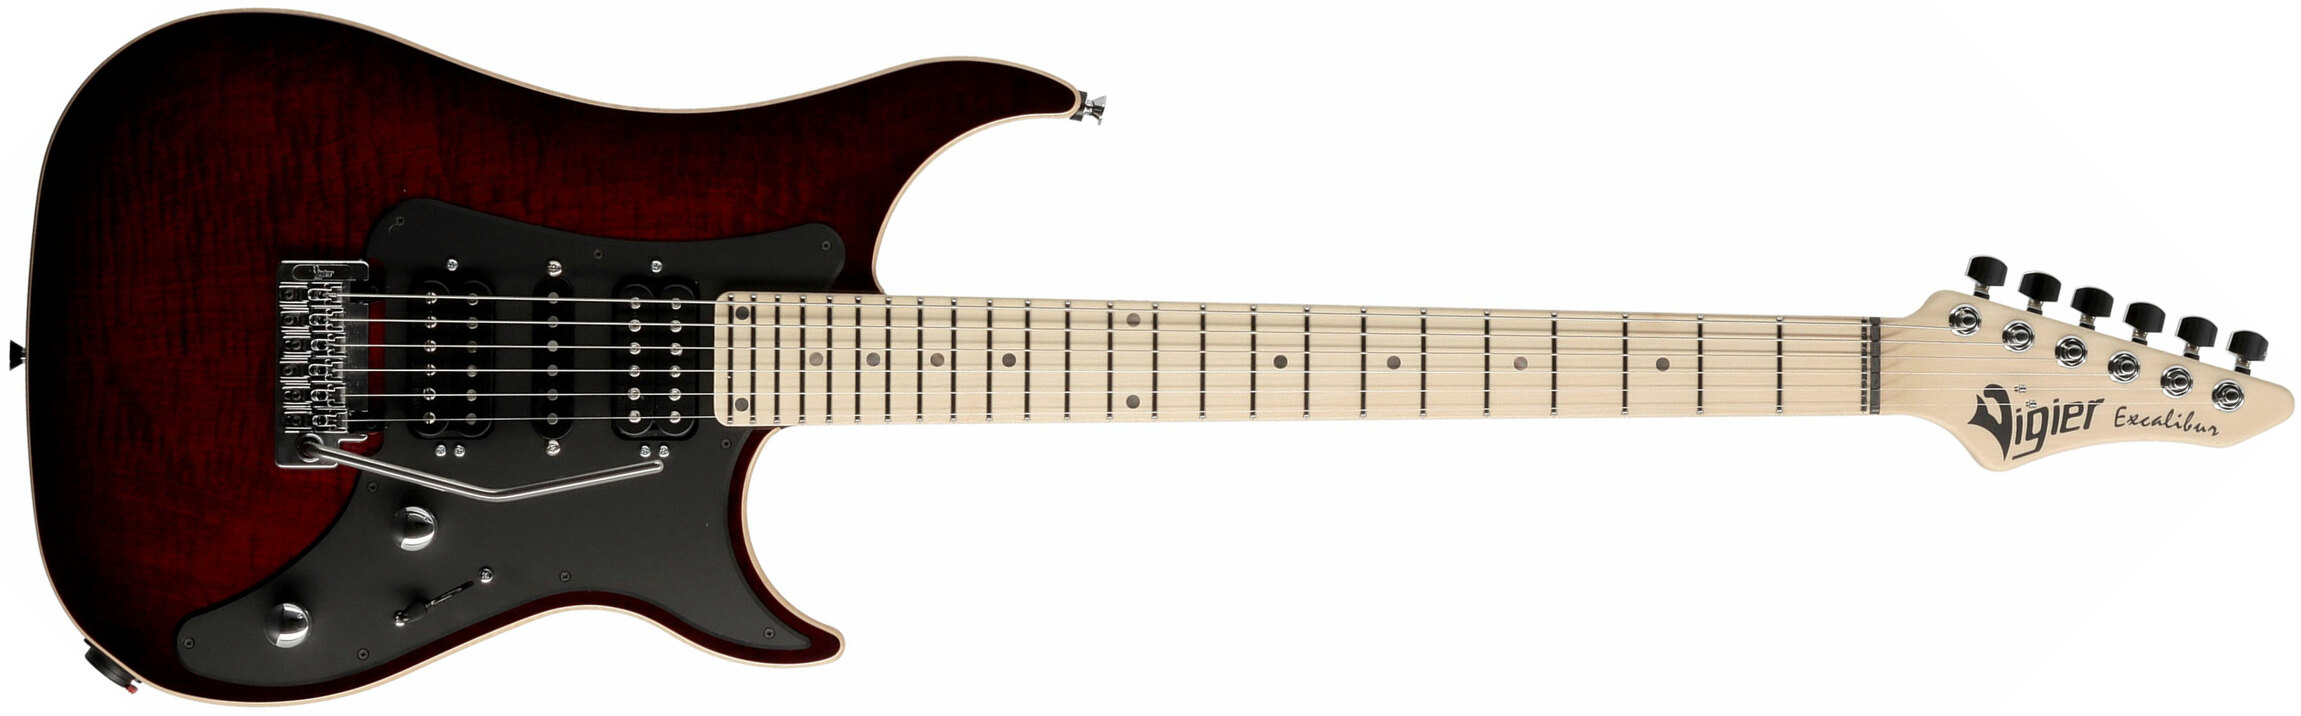 Vigier Excalibur Special Hsh Trem Mn - Deep Burgundy - Str shape electric guitar - Main picture